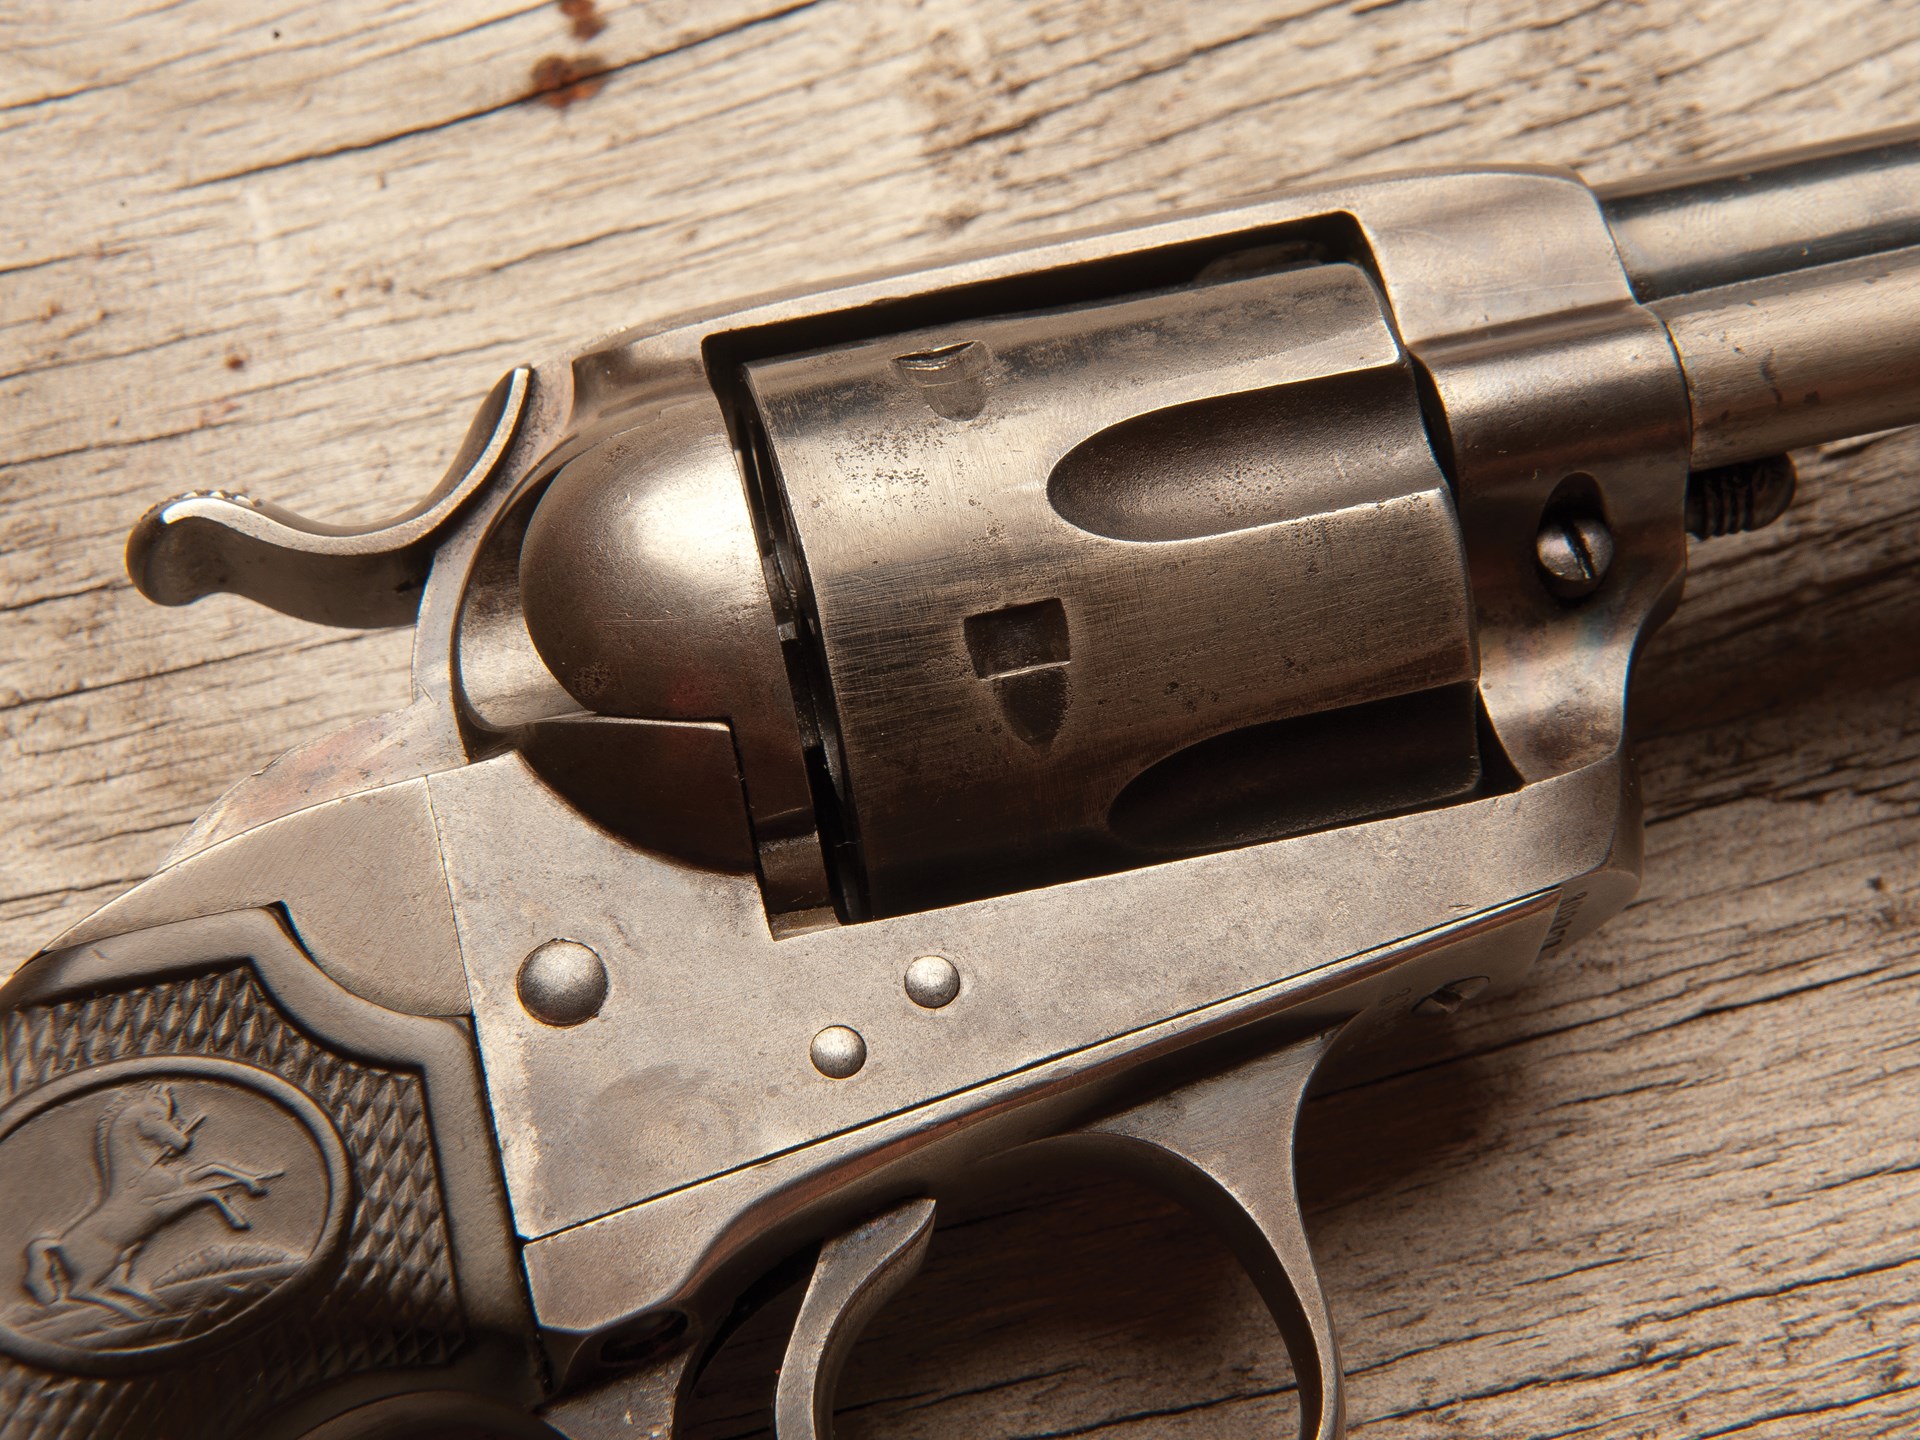 45 calibre revolver